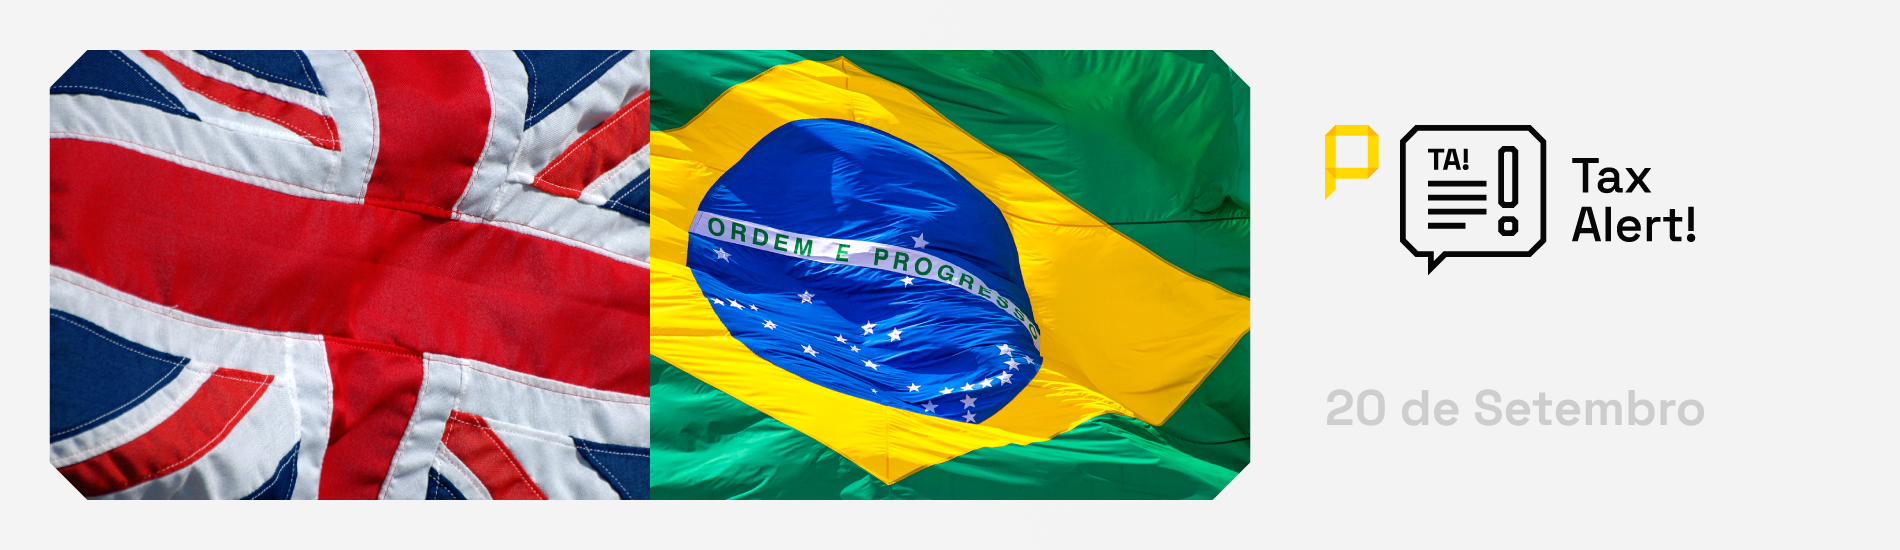 Você está visualizando atualmente Acordo entre Brasil e Reino Unido promete impulsionar as relações comerciais